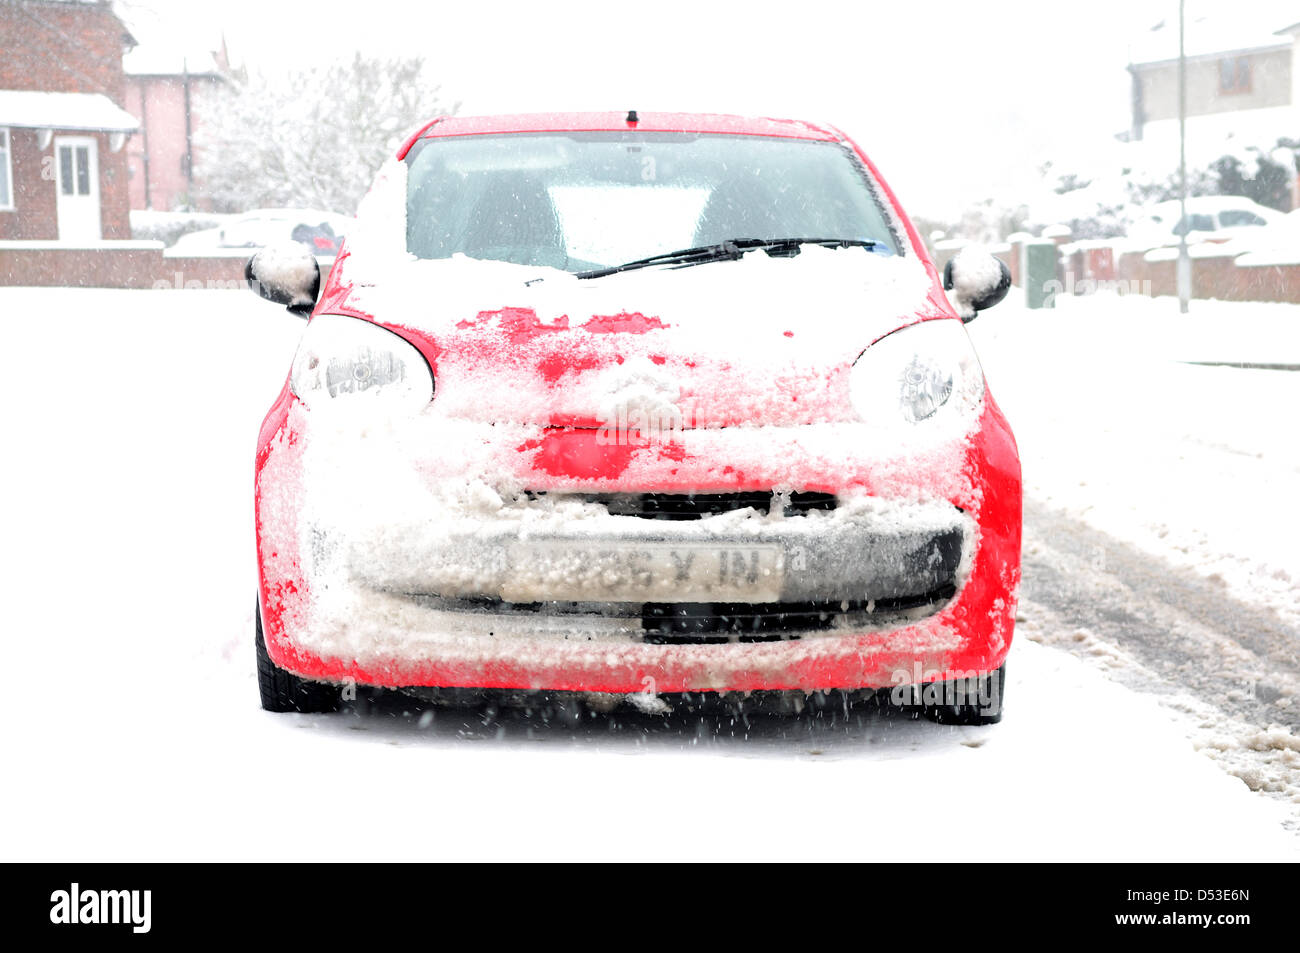 Hucknall, Notts, UK. 23. März 2013. Schnee ist weiterhin hinzufügen bereits tiefen Schnee fallen. Schneebedeckte rotes Auto. Bildnachweis: Ian Francis / Alamy Live News Stockfoto